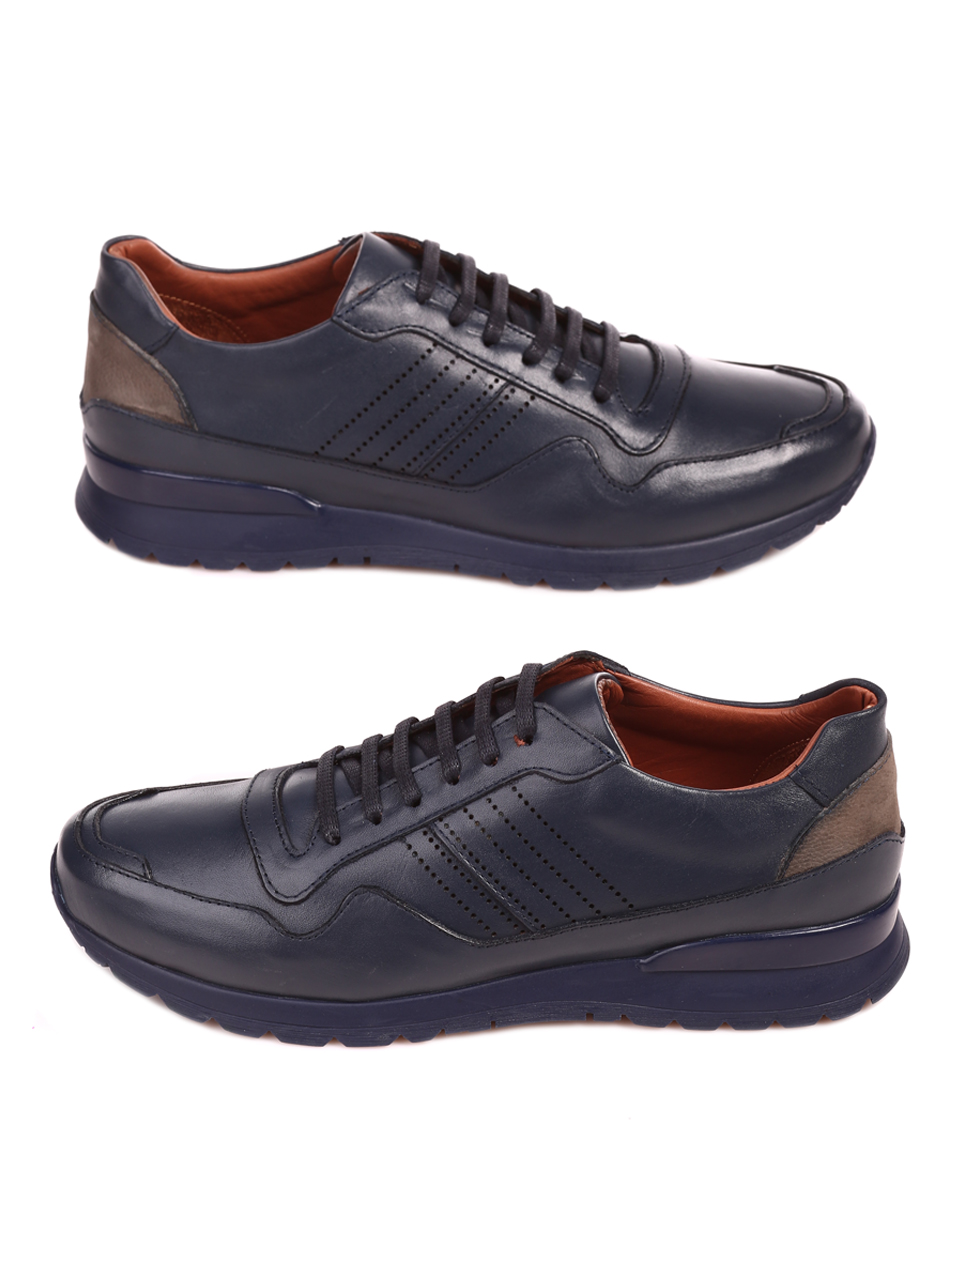 Ежедневни мъжки обувки от естествена кожа 7AT-22758 navy